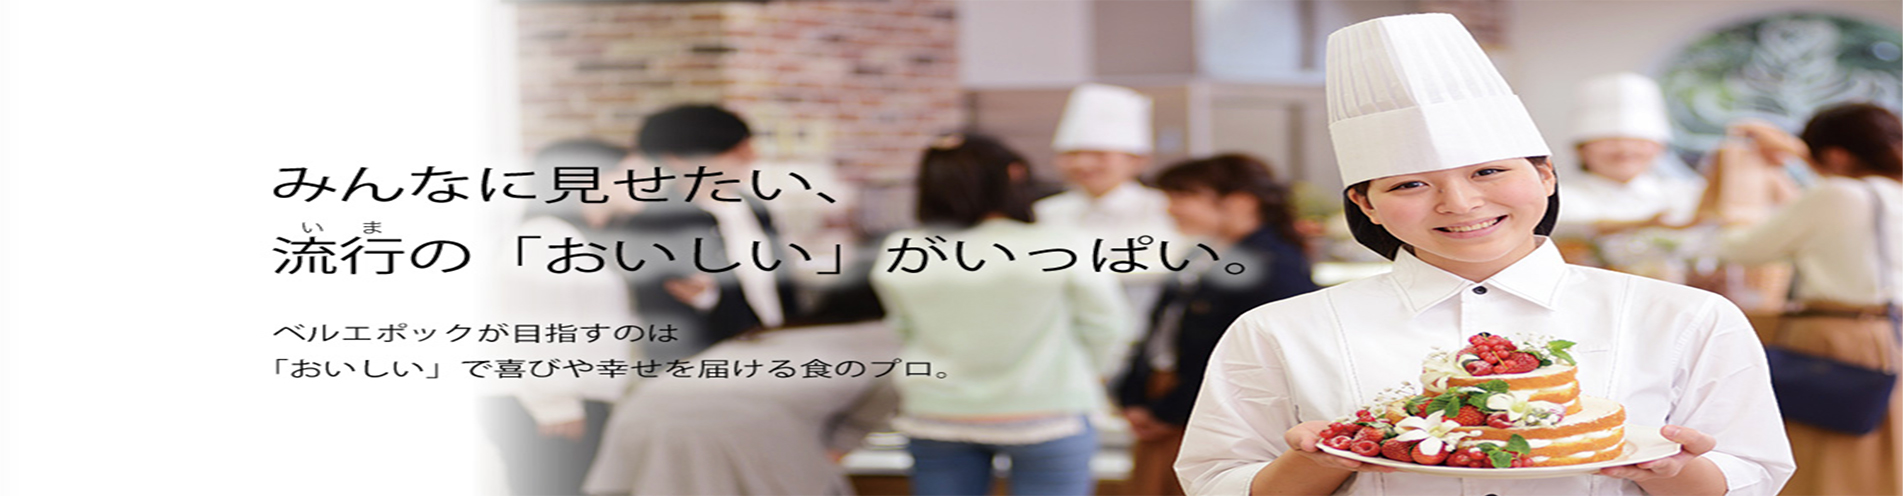 埼玉优雅西点烹饪专业学院